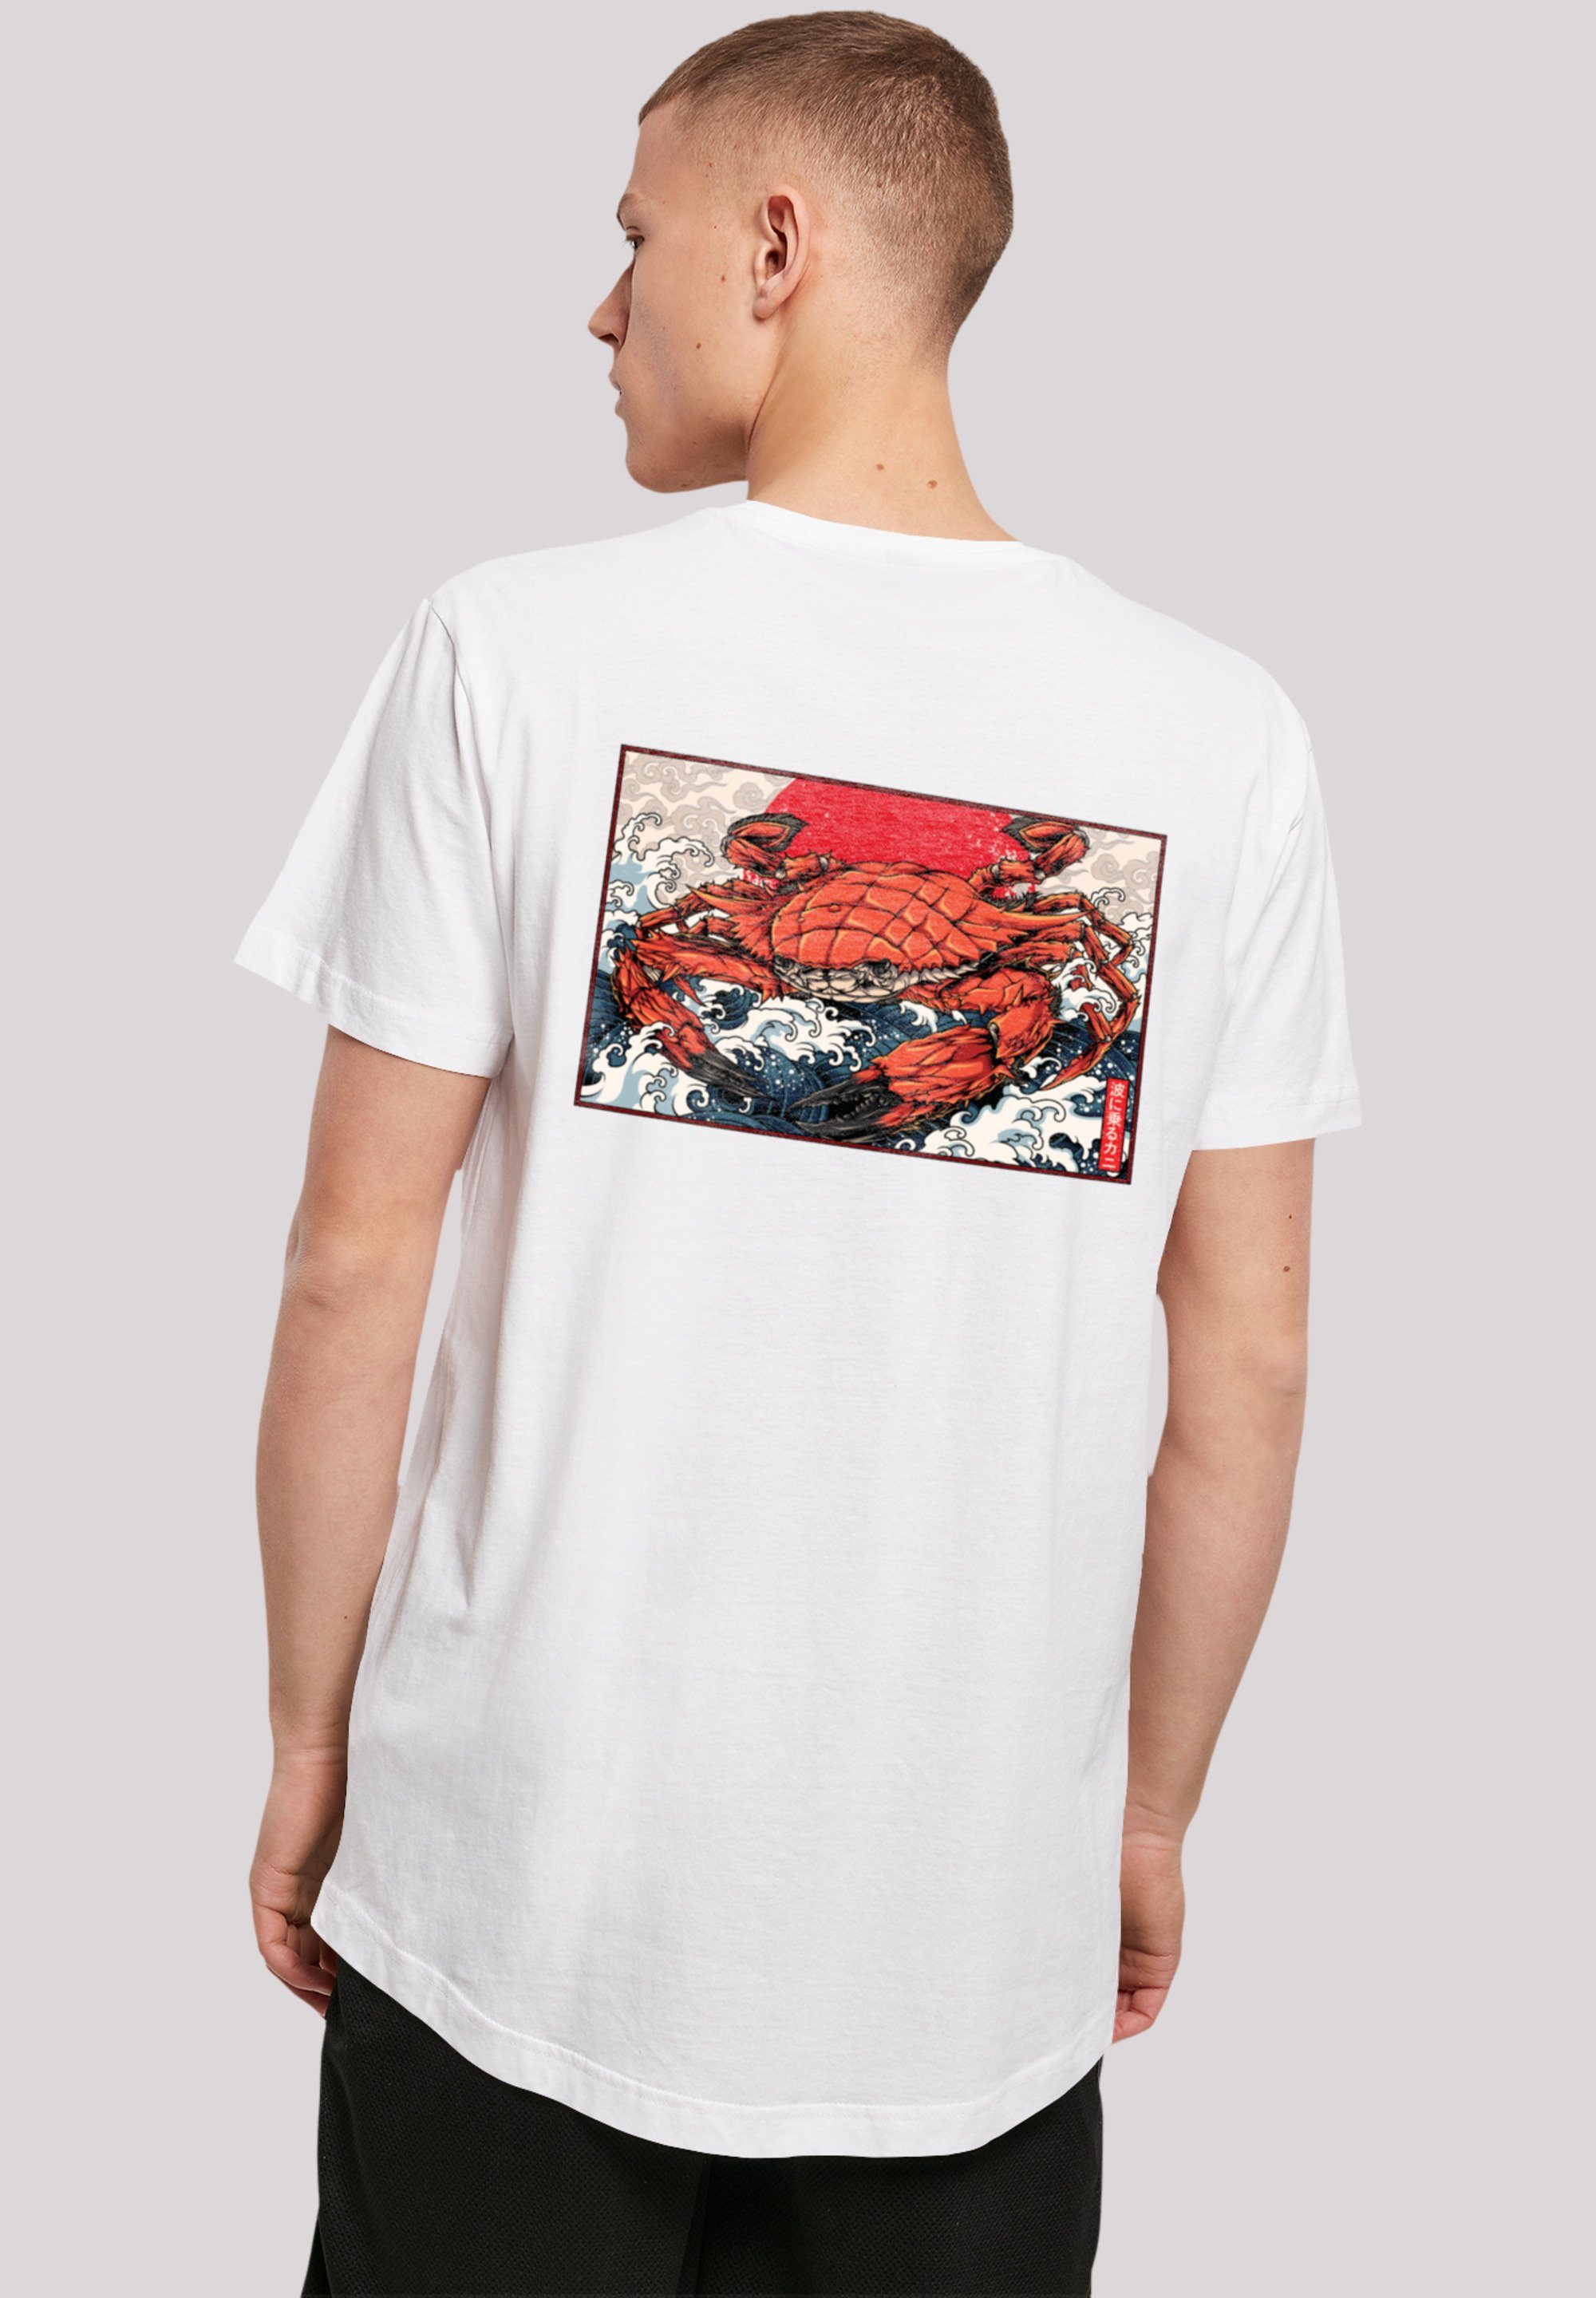 F4NT4STIC T-Shirt Welle Crab Tragekomfort Sehr Print, hohem mit Japan Baumwollstoff weicher